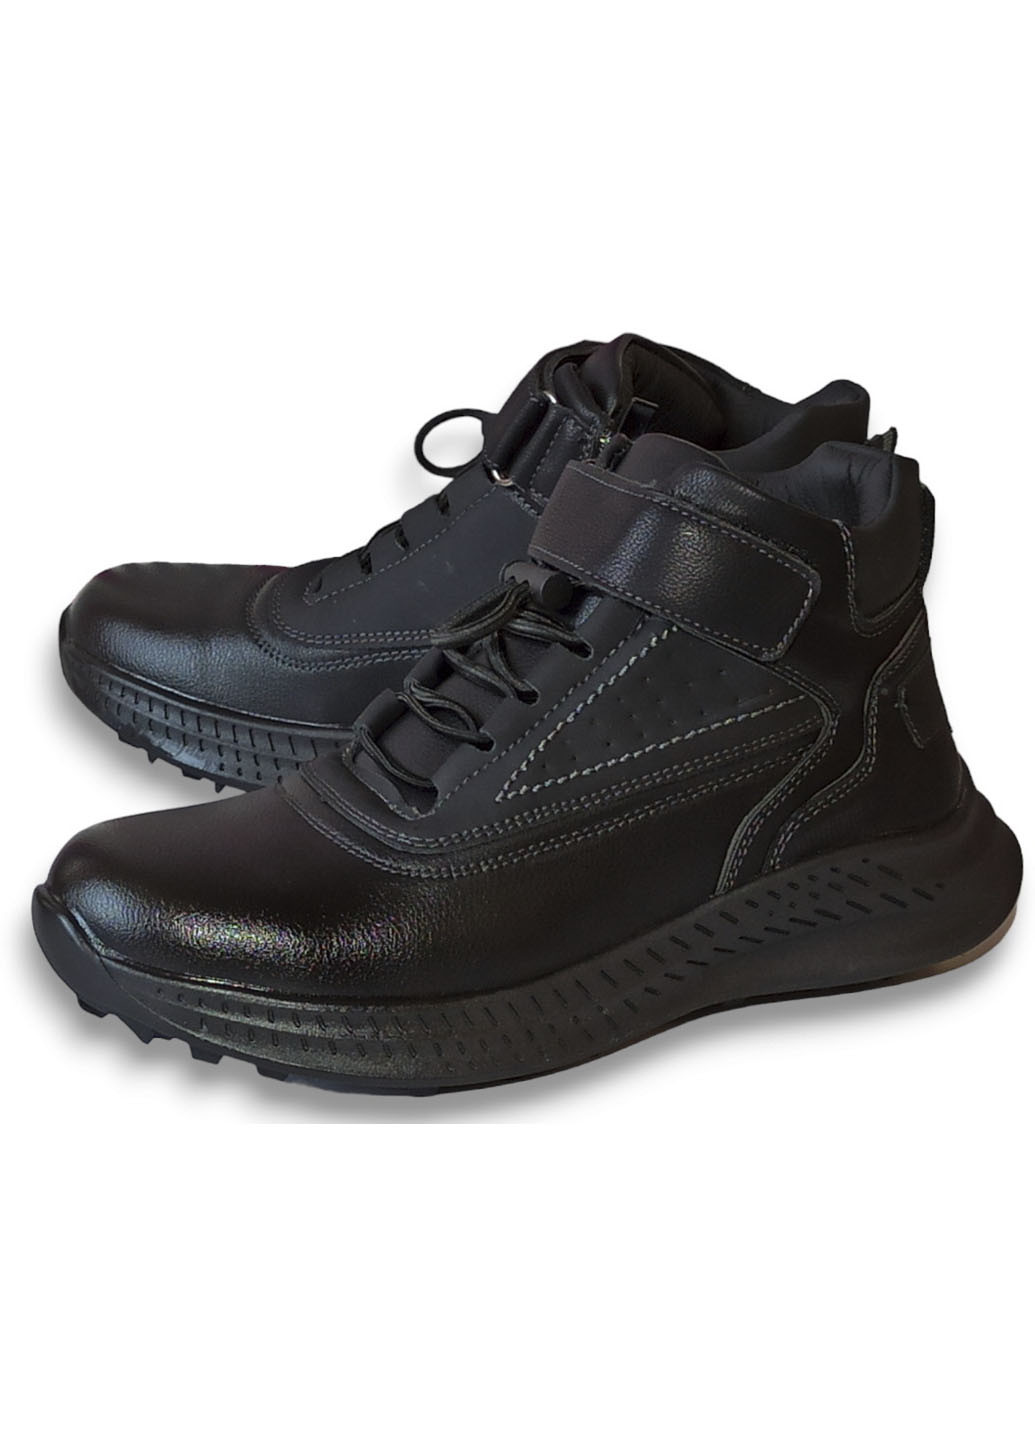 Черные повседневные осенние демисезонные ботинки хайтопы для мальчика подростка на флисе 10151а 33-21,5см 35-22,5см 36-23см 37-23,5см 38-24,2см Tom.M